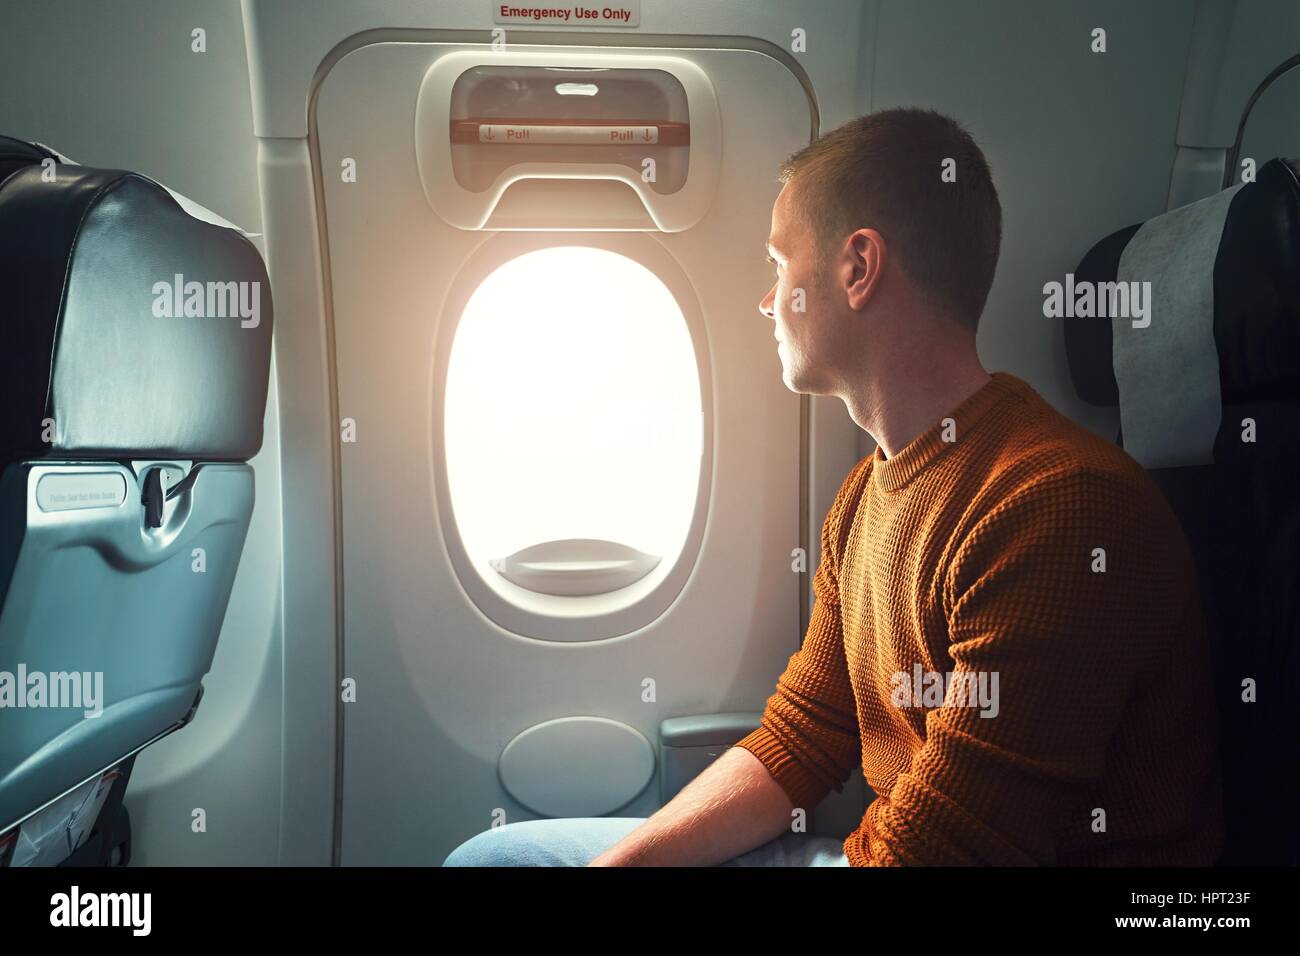 Bequeme Anreise mit dem Flugzeug. Neugierige junge Passagier Blick aus dem Fenster (Notausgang aus dem Flugzeug). Stockfoto